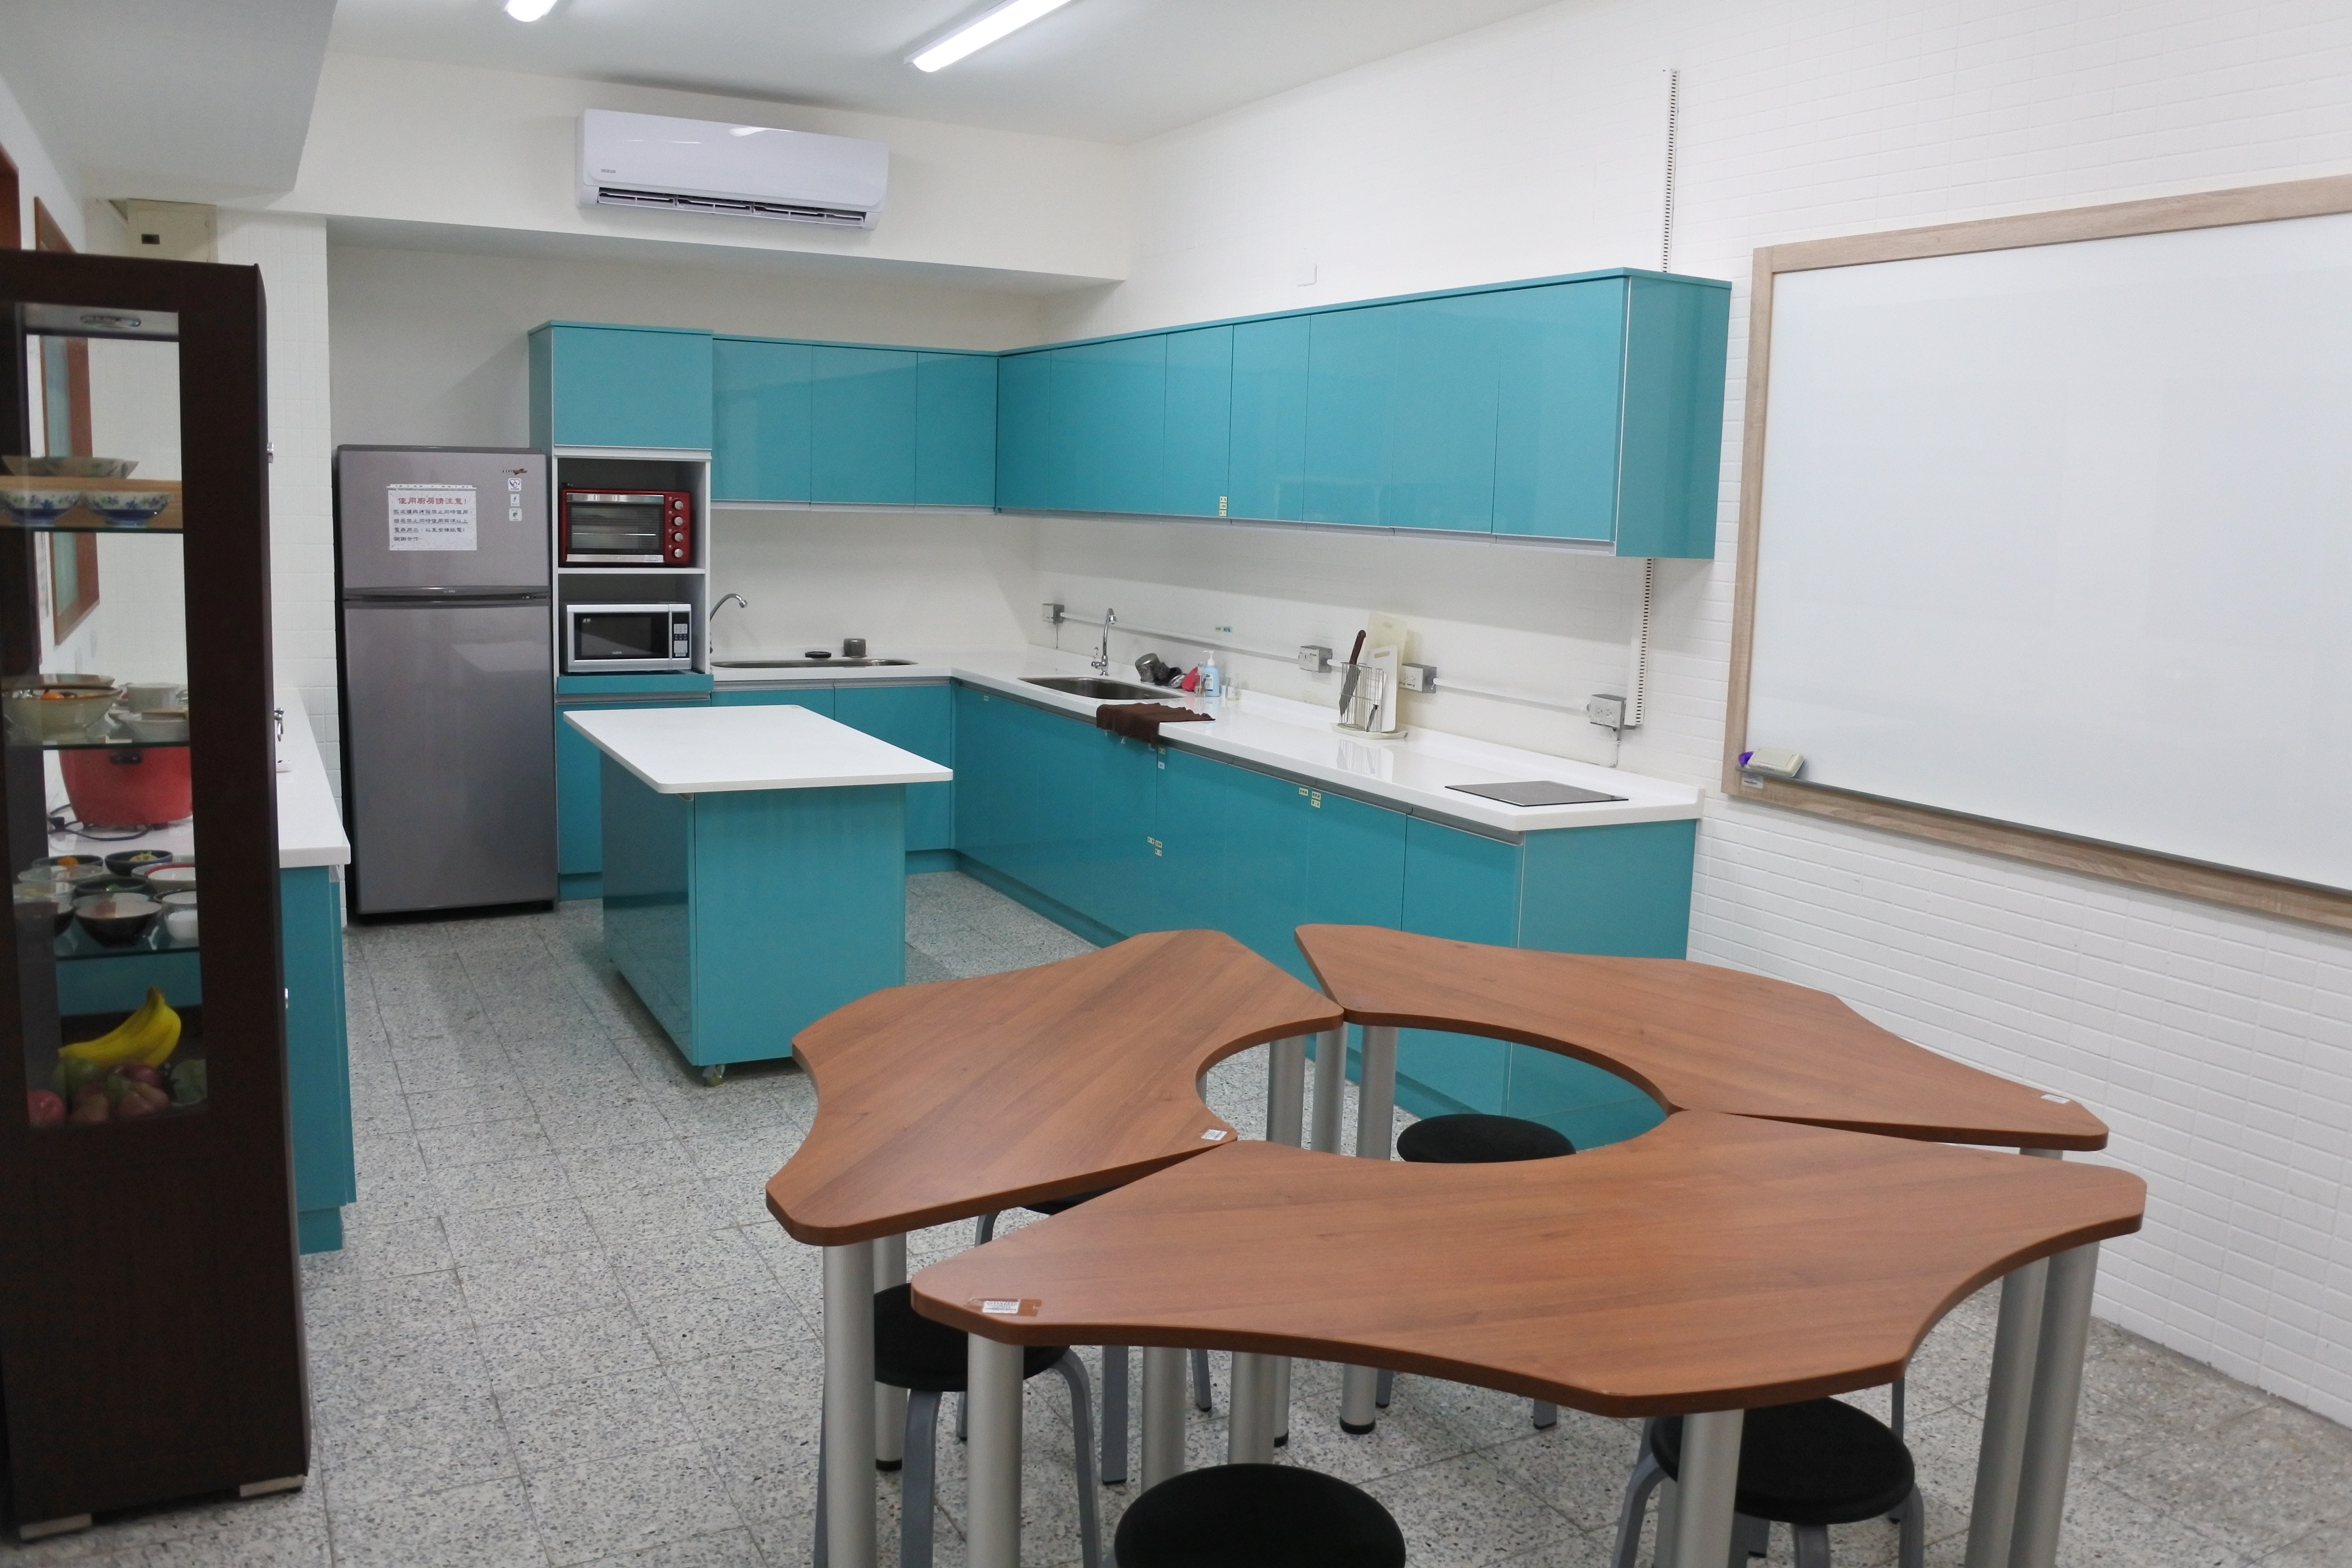 I411-1膳食製備專業教室專業教室